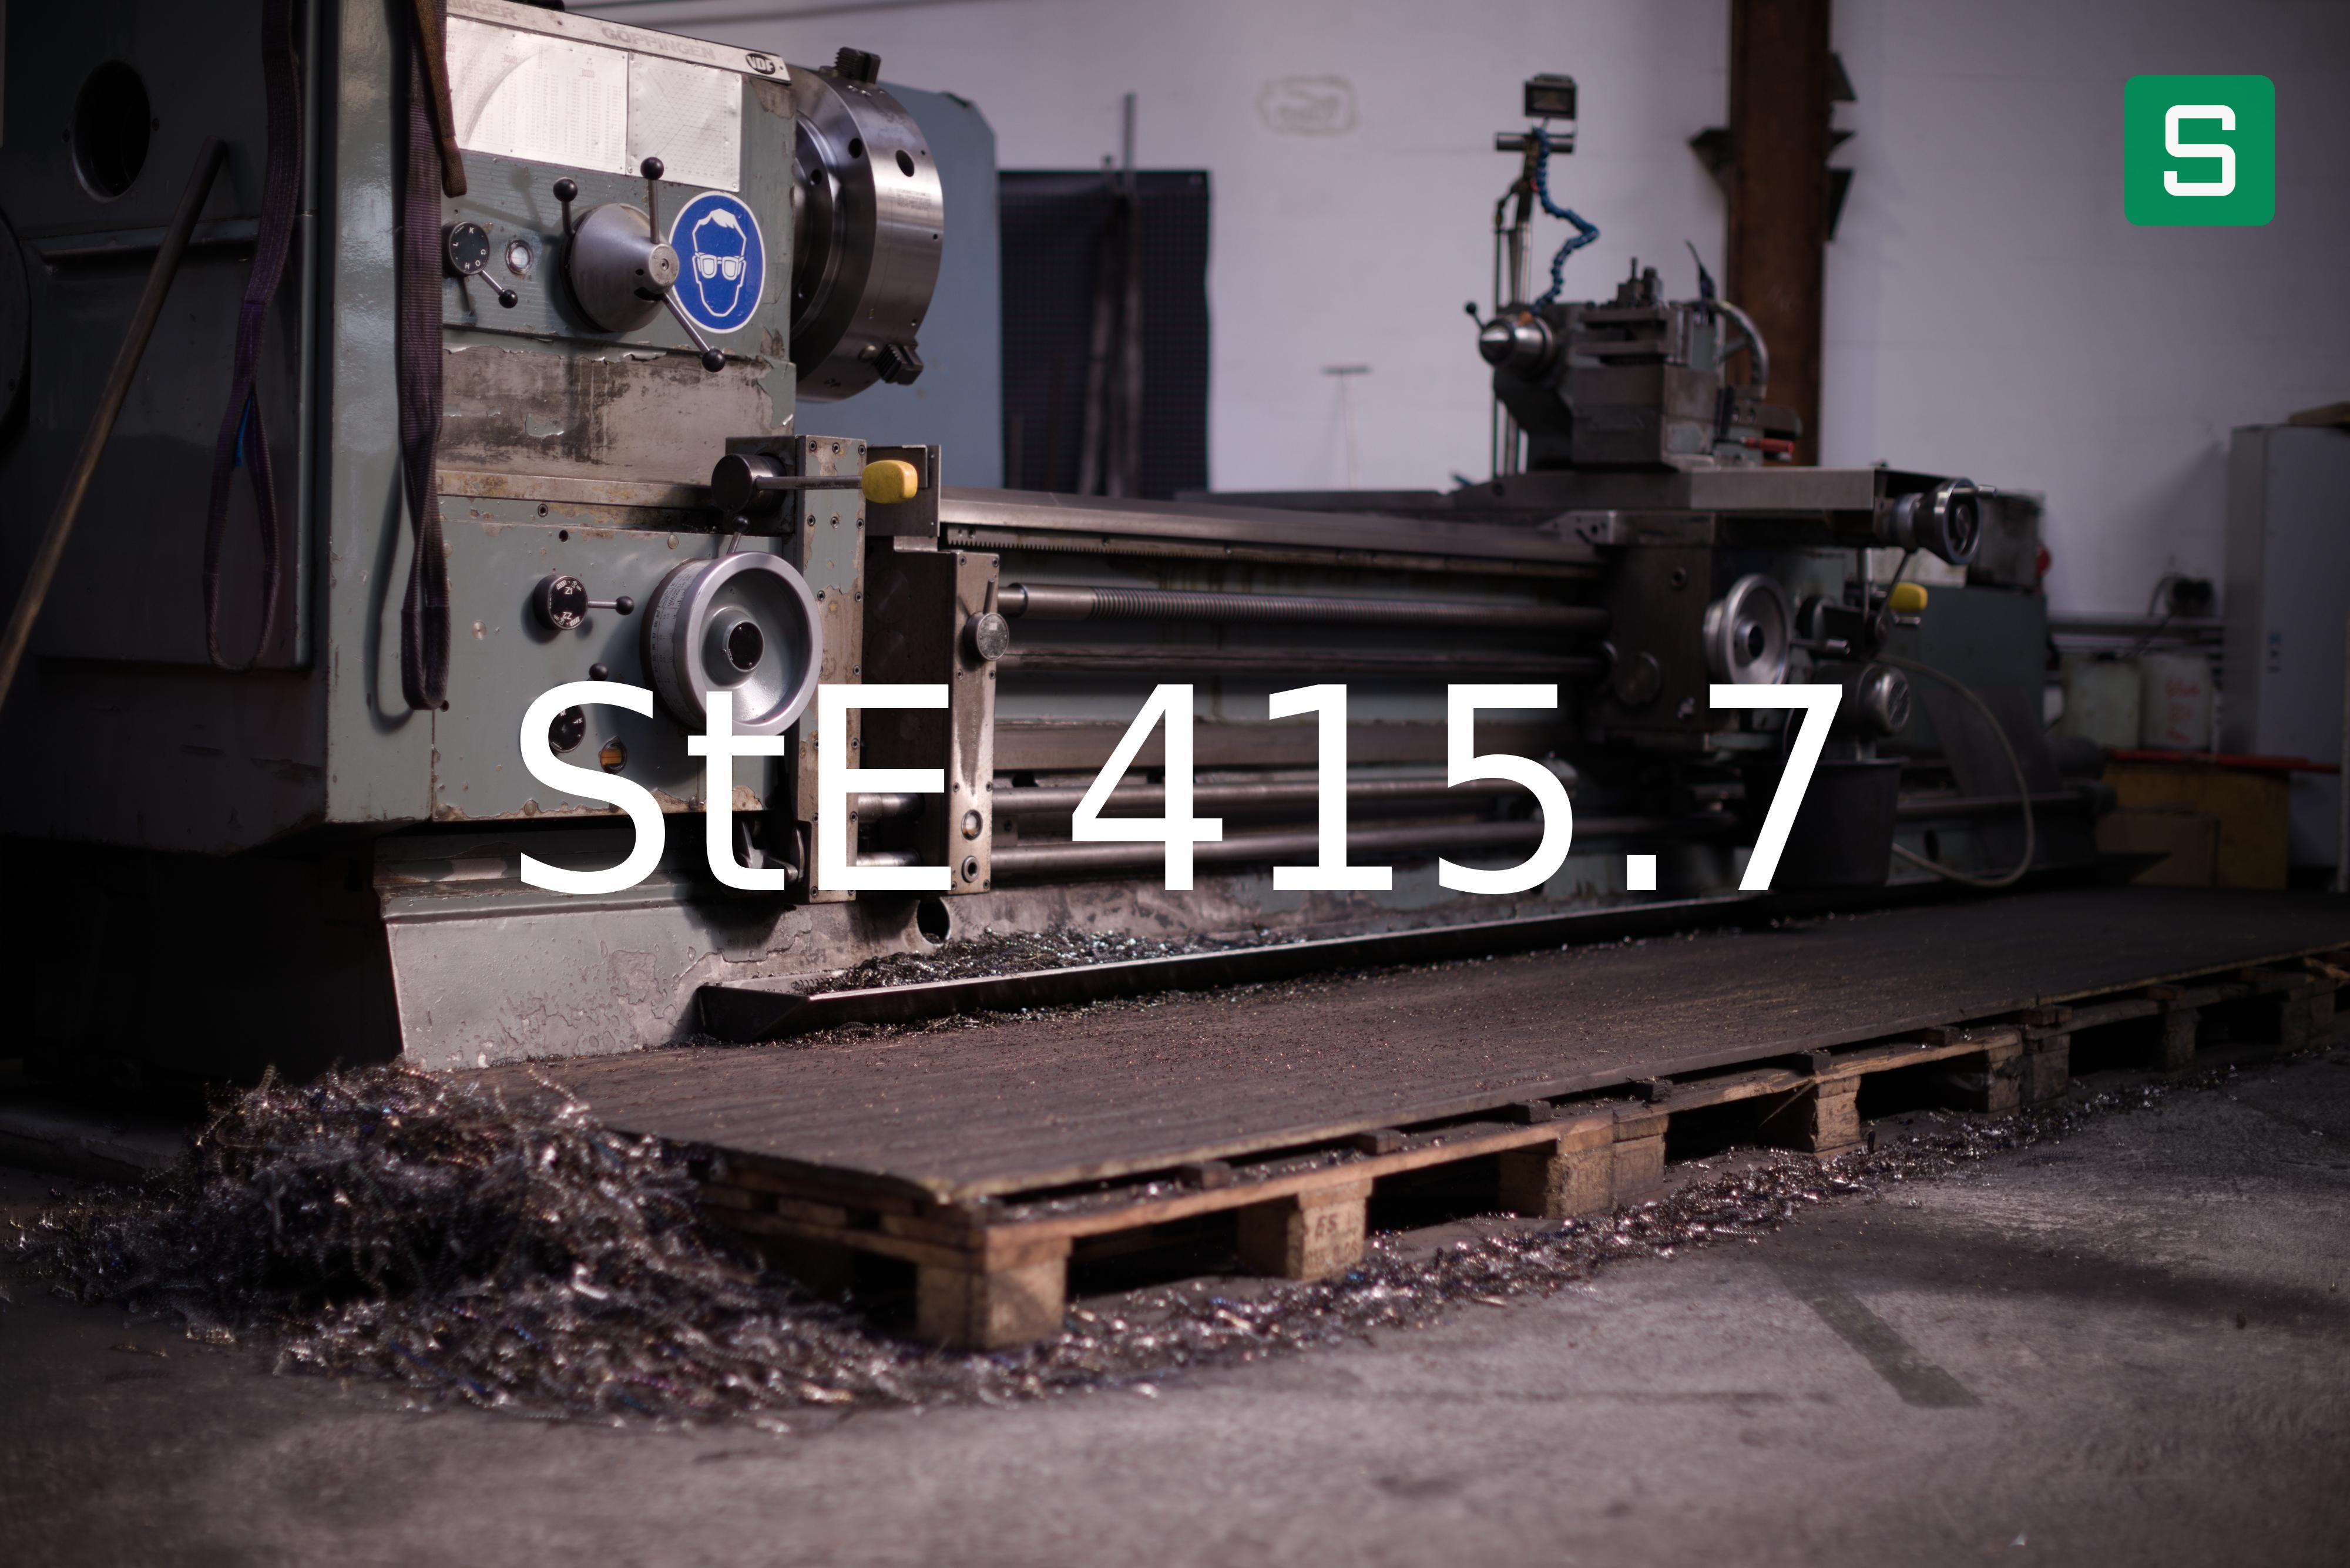 Steel Material: StE 415.7